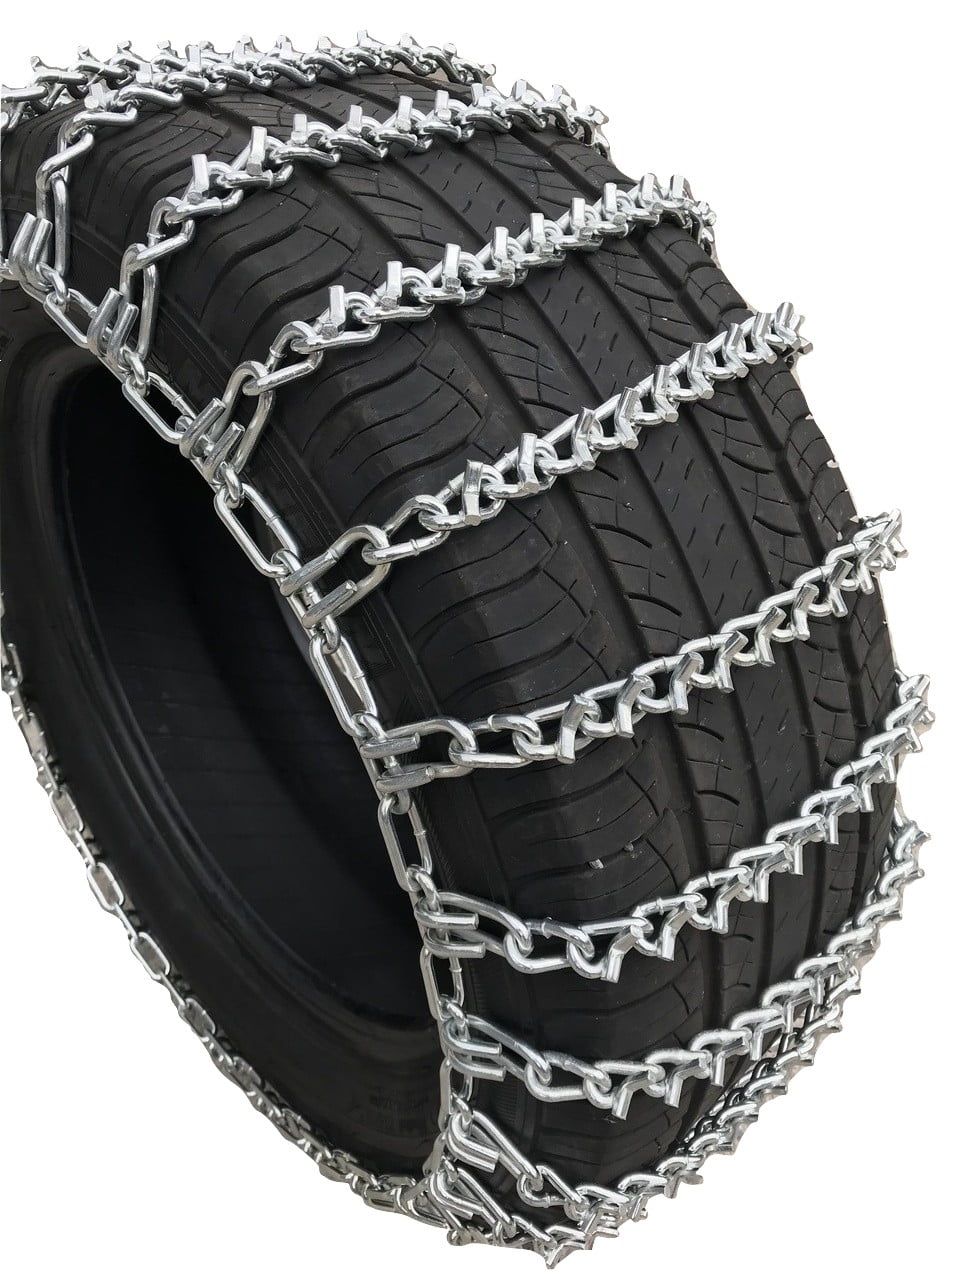 275/55 20 V-BAR Cam Tire Chains Priced per Pair. TireChain.com 275/55R20 